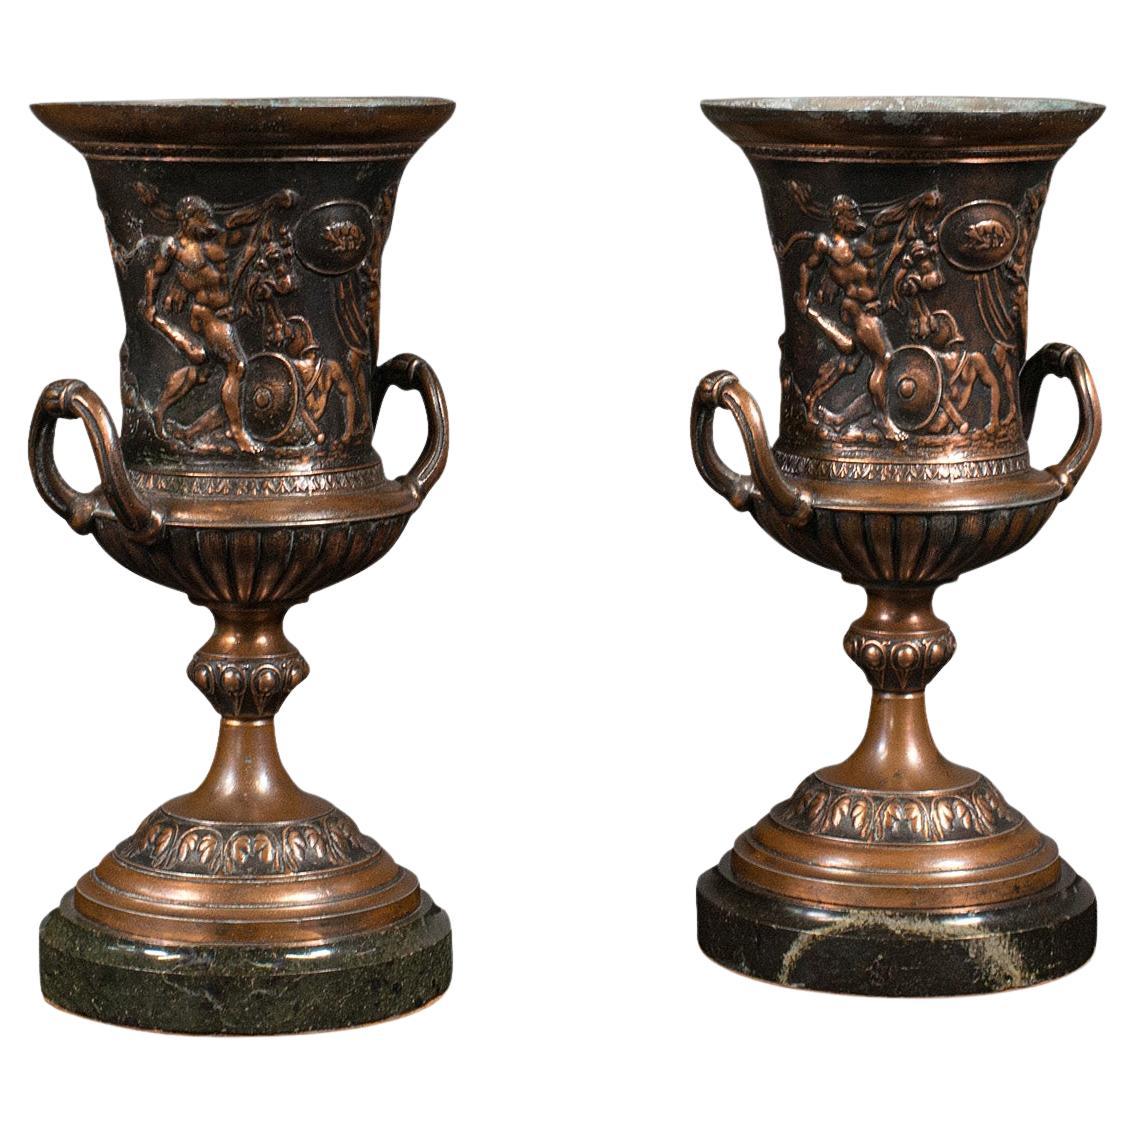 Pair, Antique Grand Tour Urns, Italian, Decorative Vase, Roman Taste, Victorian